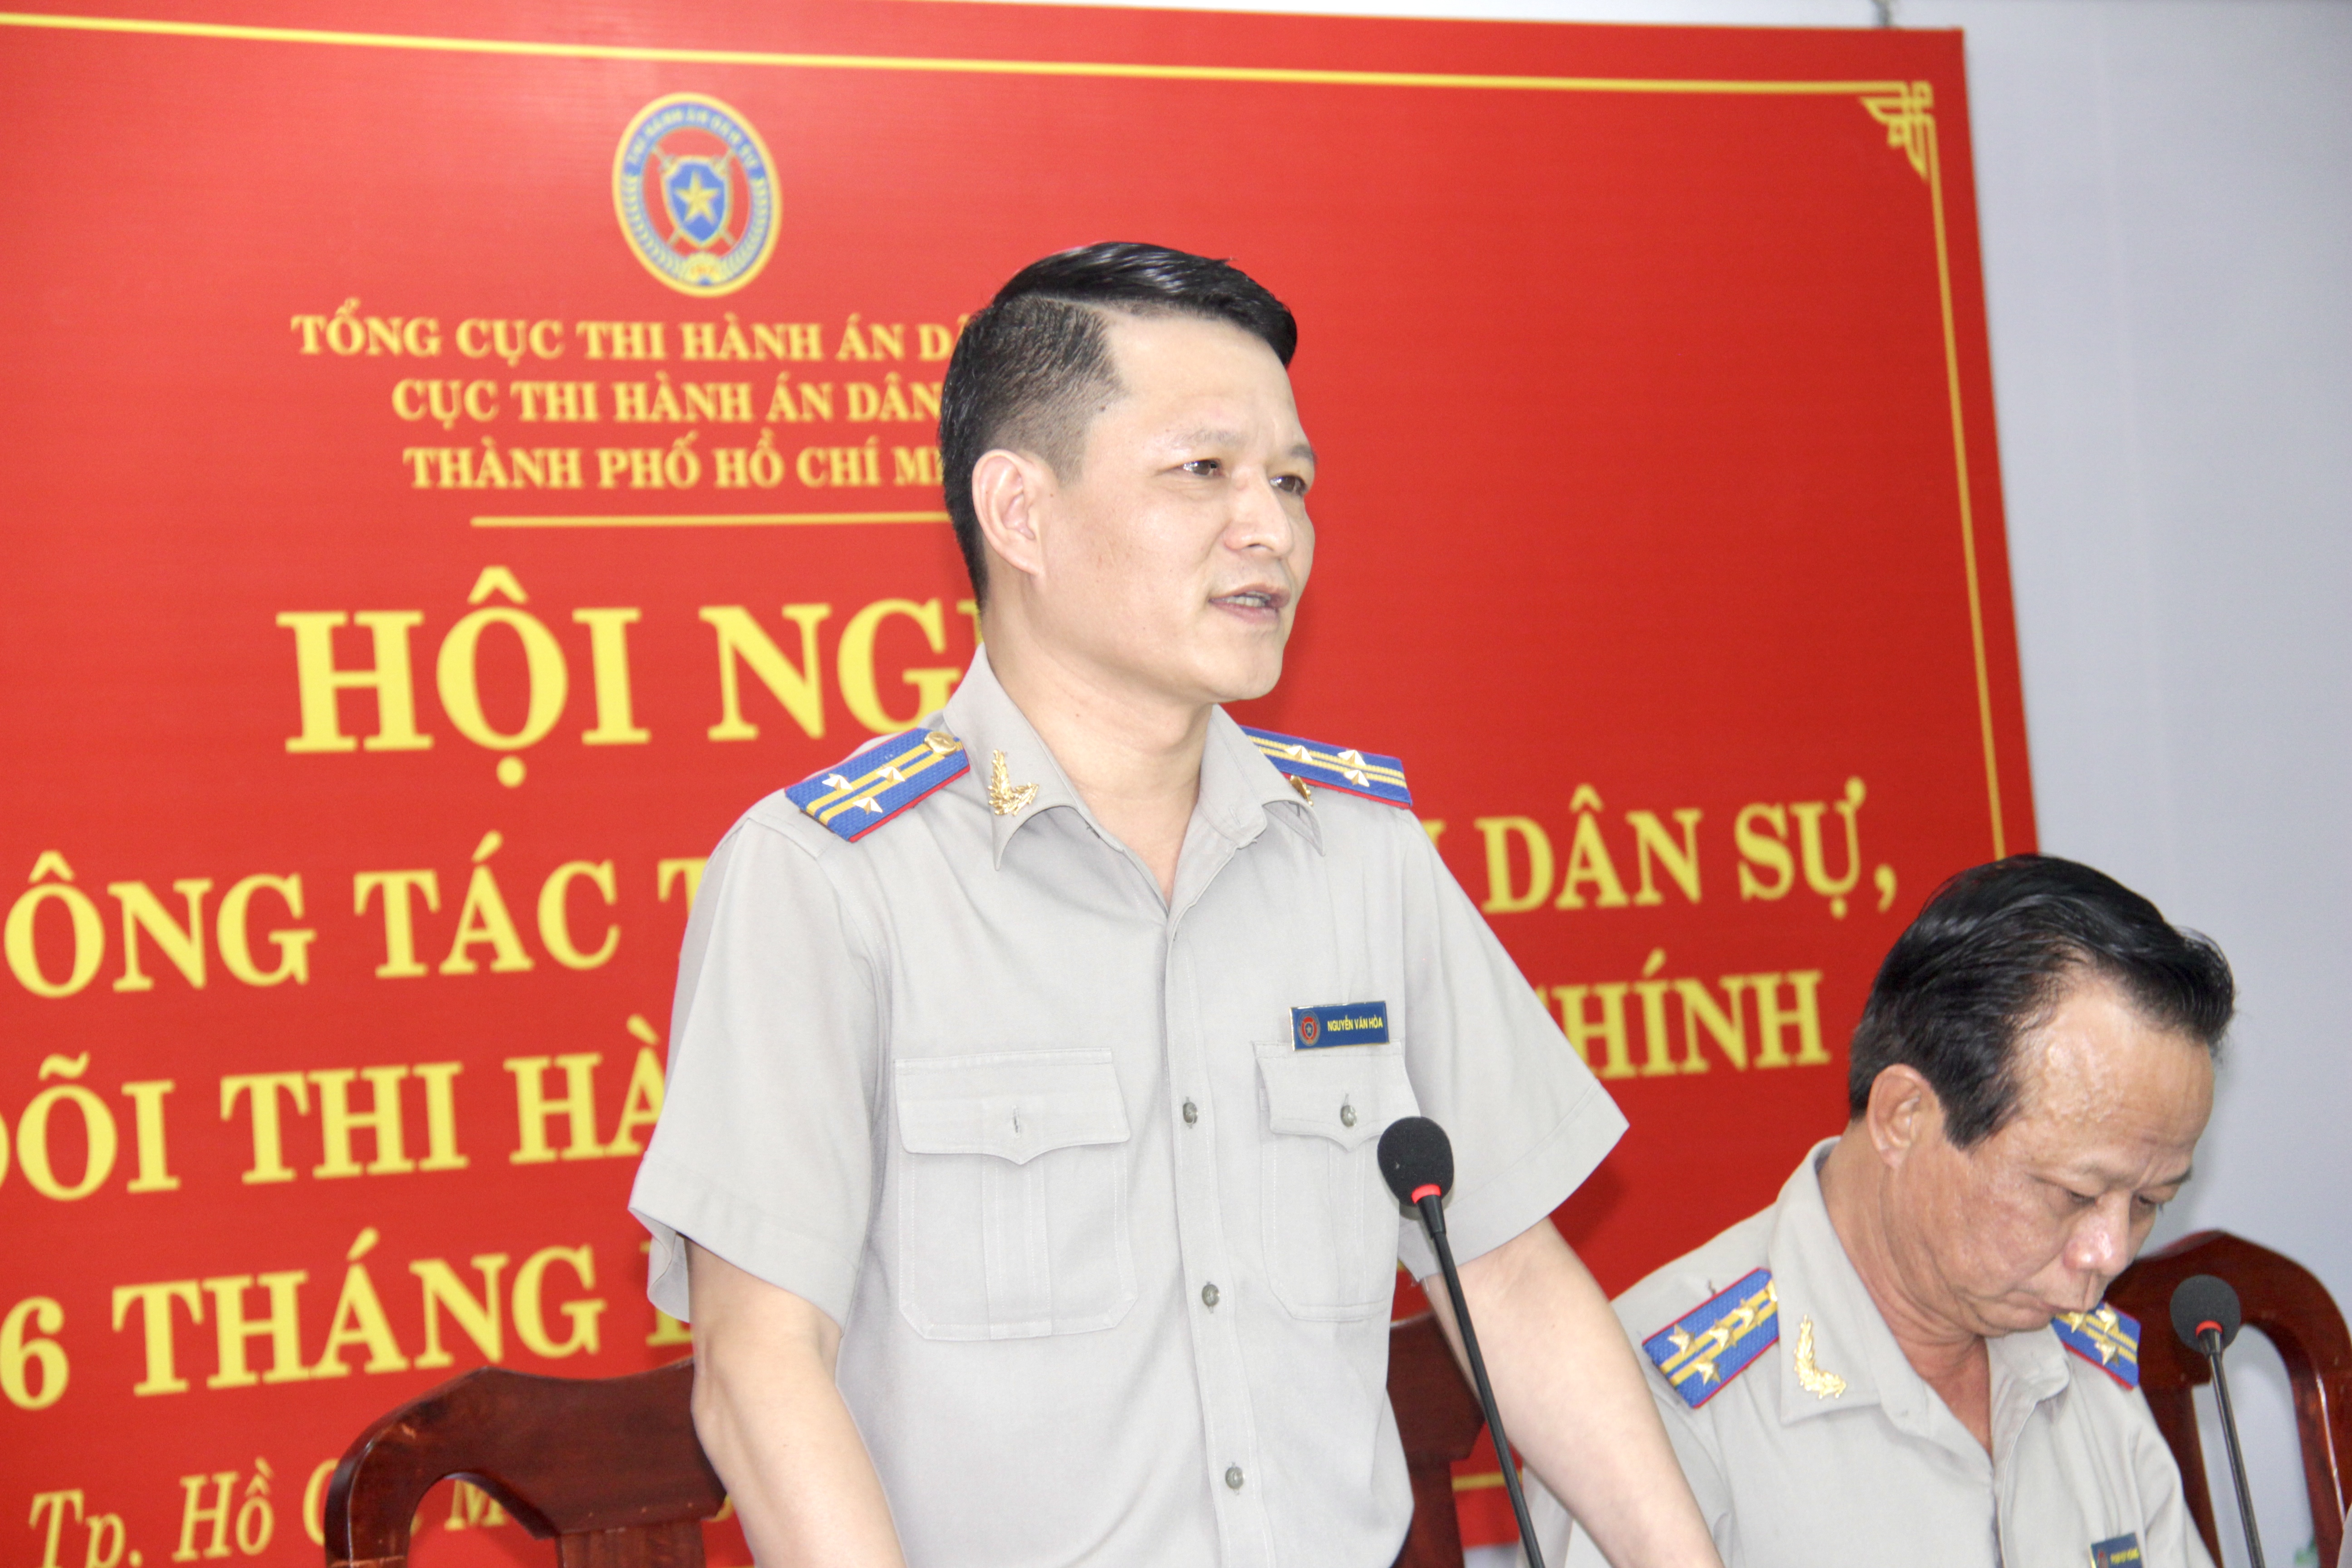 Ông Nguyễn Văn Hòa được giao phụ trách Cục Thi hành án dân sự Thành phố Hồ Chí Minh